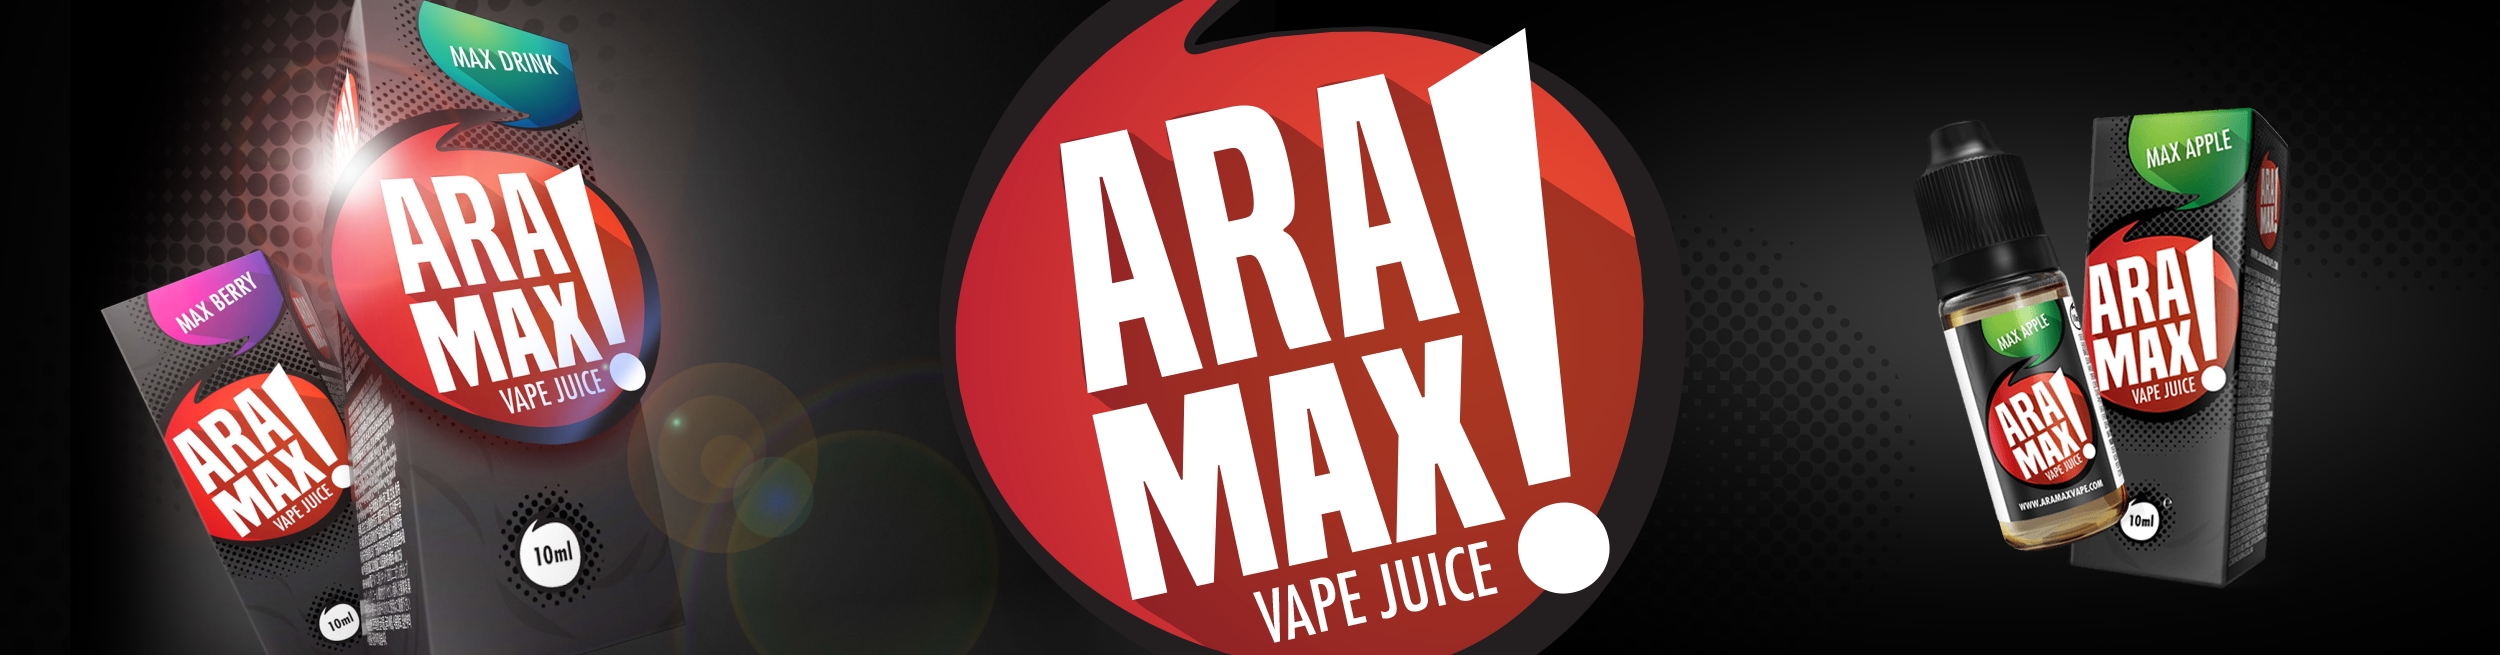 Návrh Proti vůli štít elektronicke cigarety aramax Existence Rozkazovací  způsob průvodce